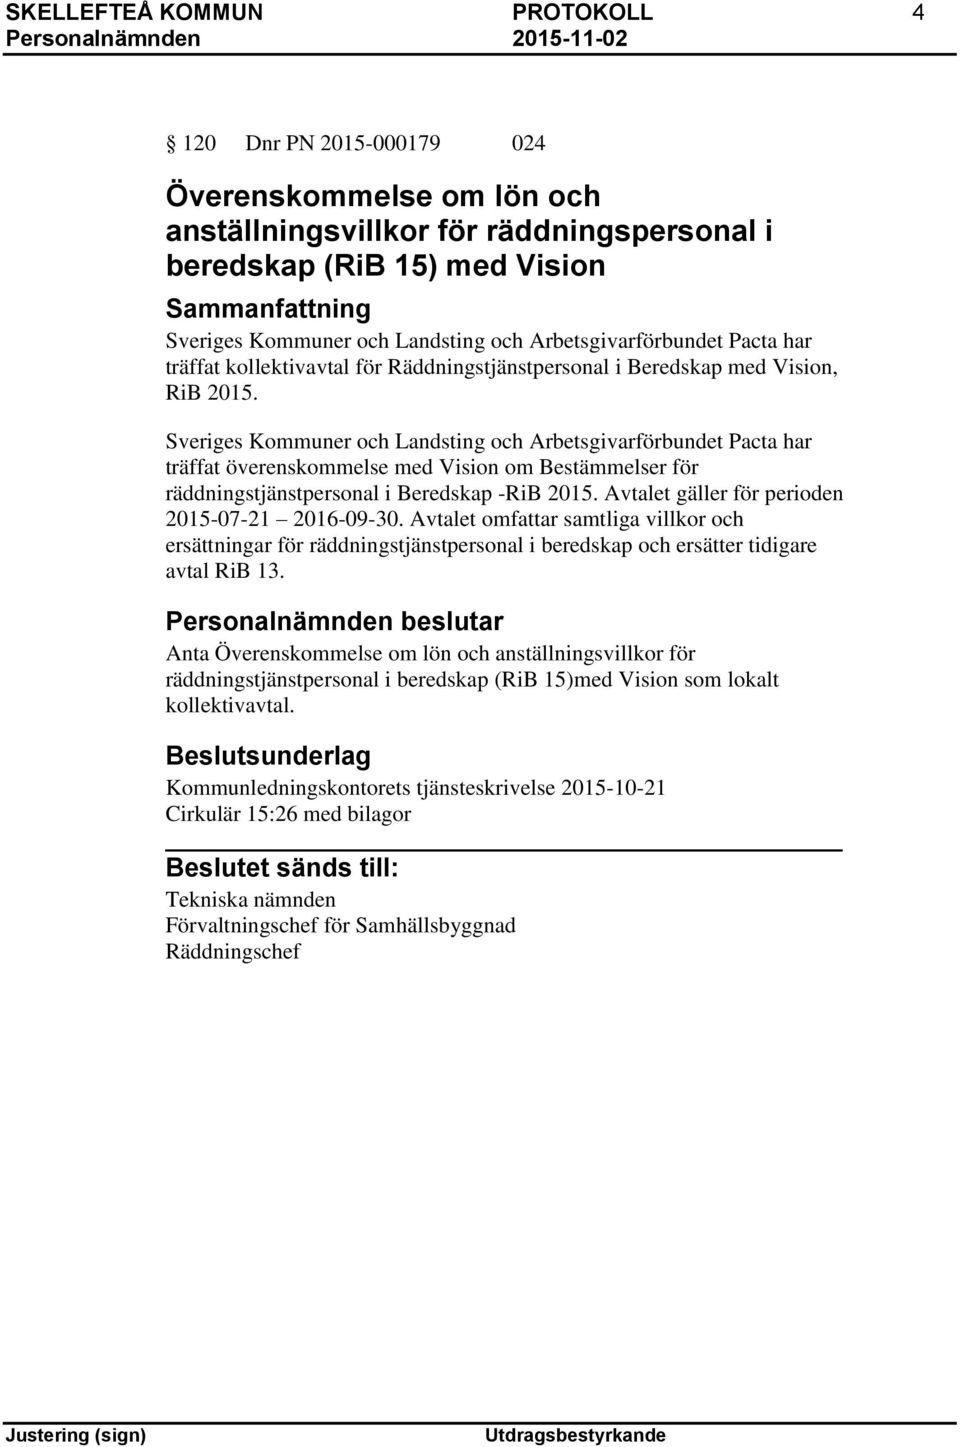 Sveriges Kommuner och Landsting och Arbetsgivarförbundet Pacta har träffat överenskommelse med Vision om Bestämmelser för räddningstjänstpersonal i Beredskap -RiB 2015.